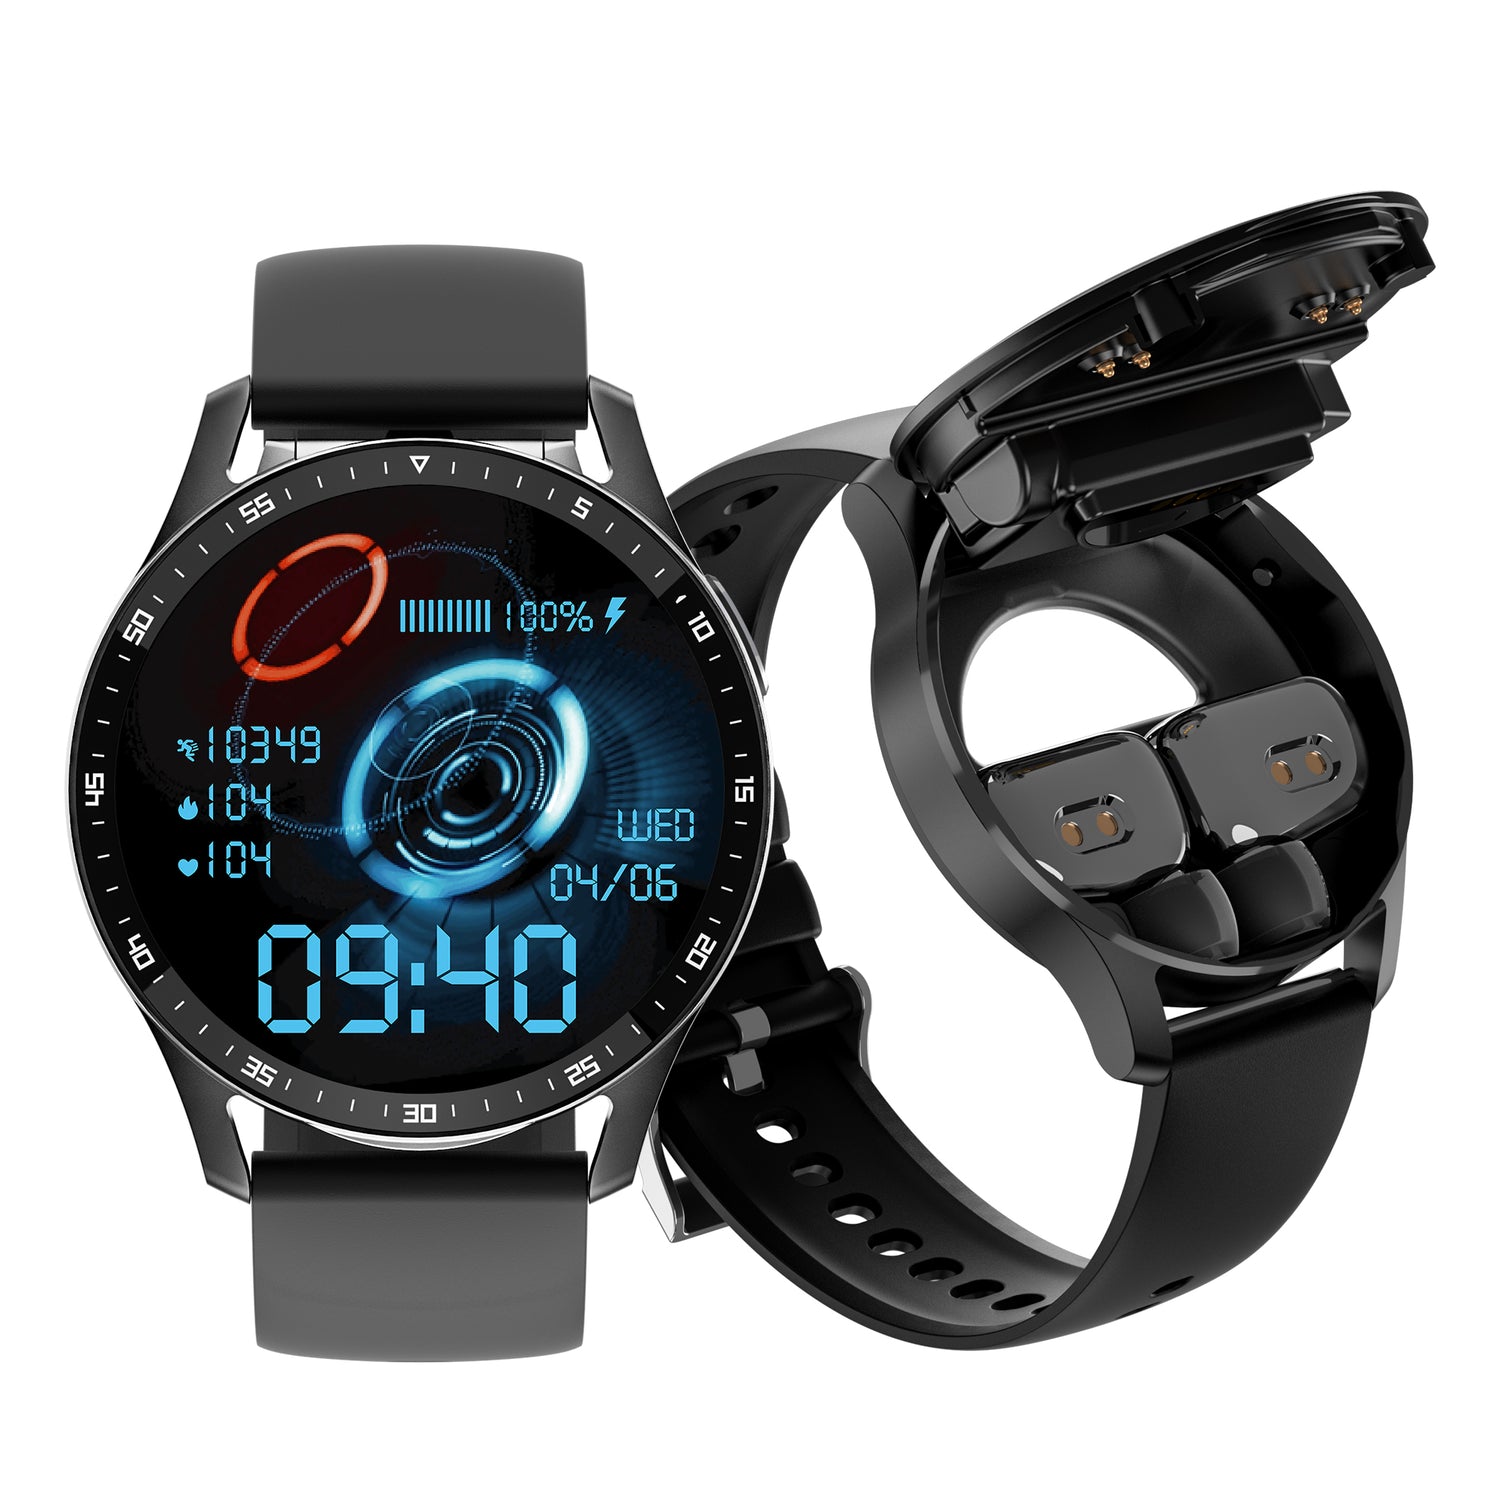 X7 earphone smart watch